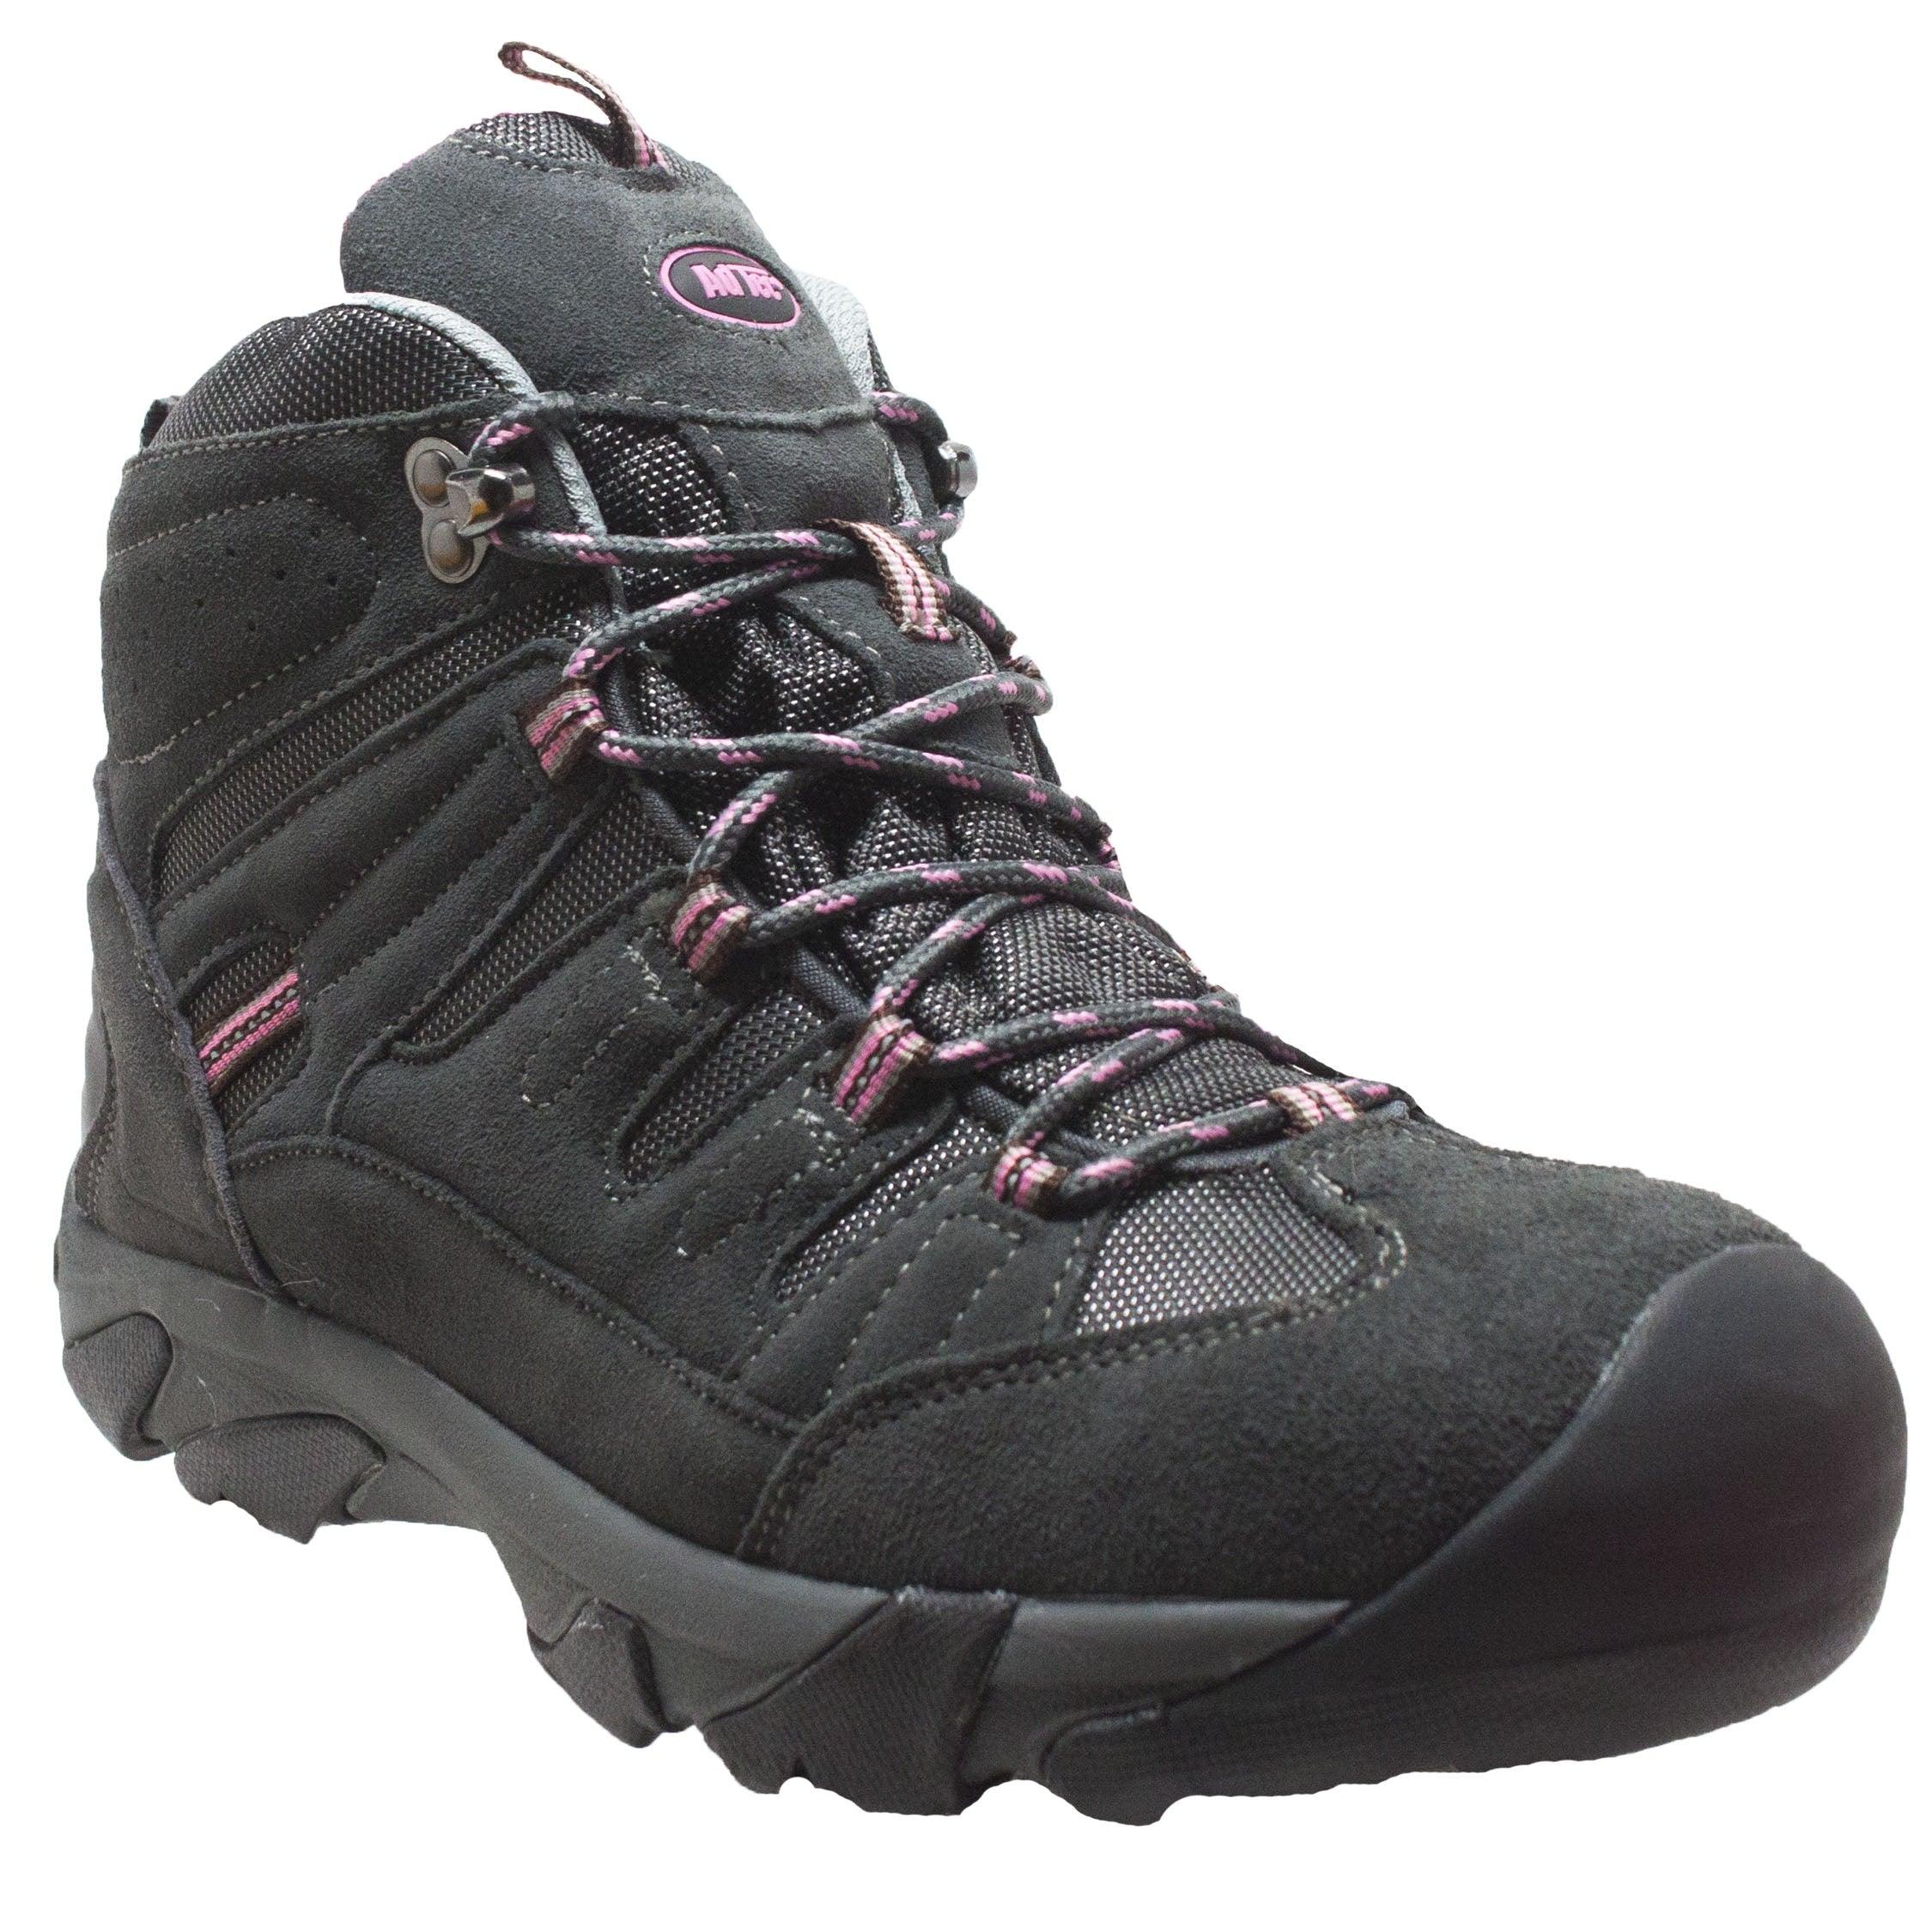 AdTec Women's Composite Toe Work Hiker Grey/Pink - Flyclothing LLC